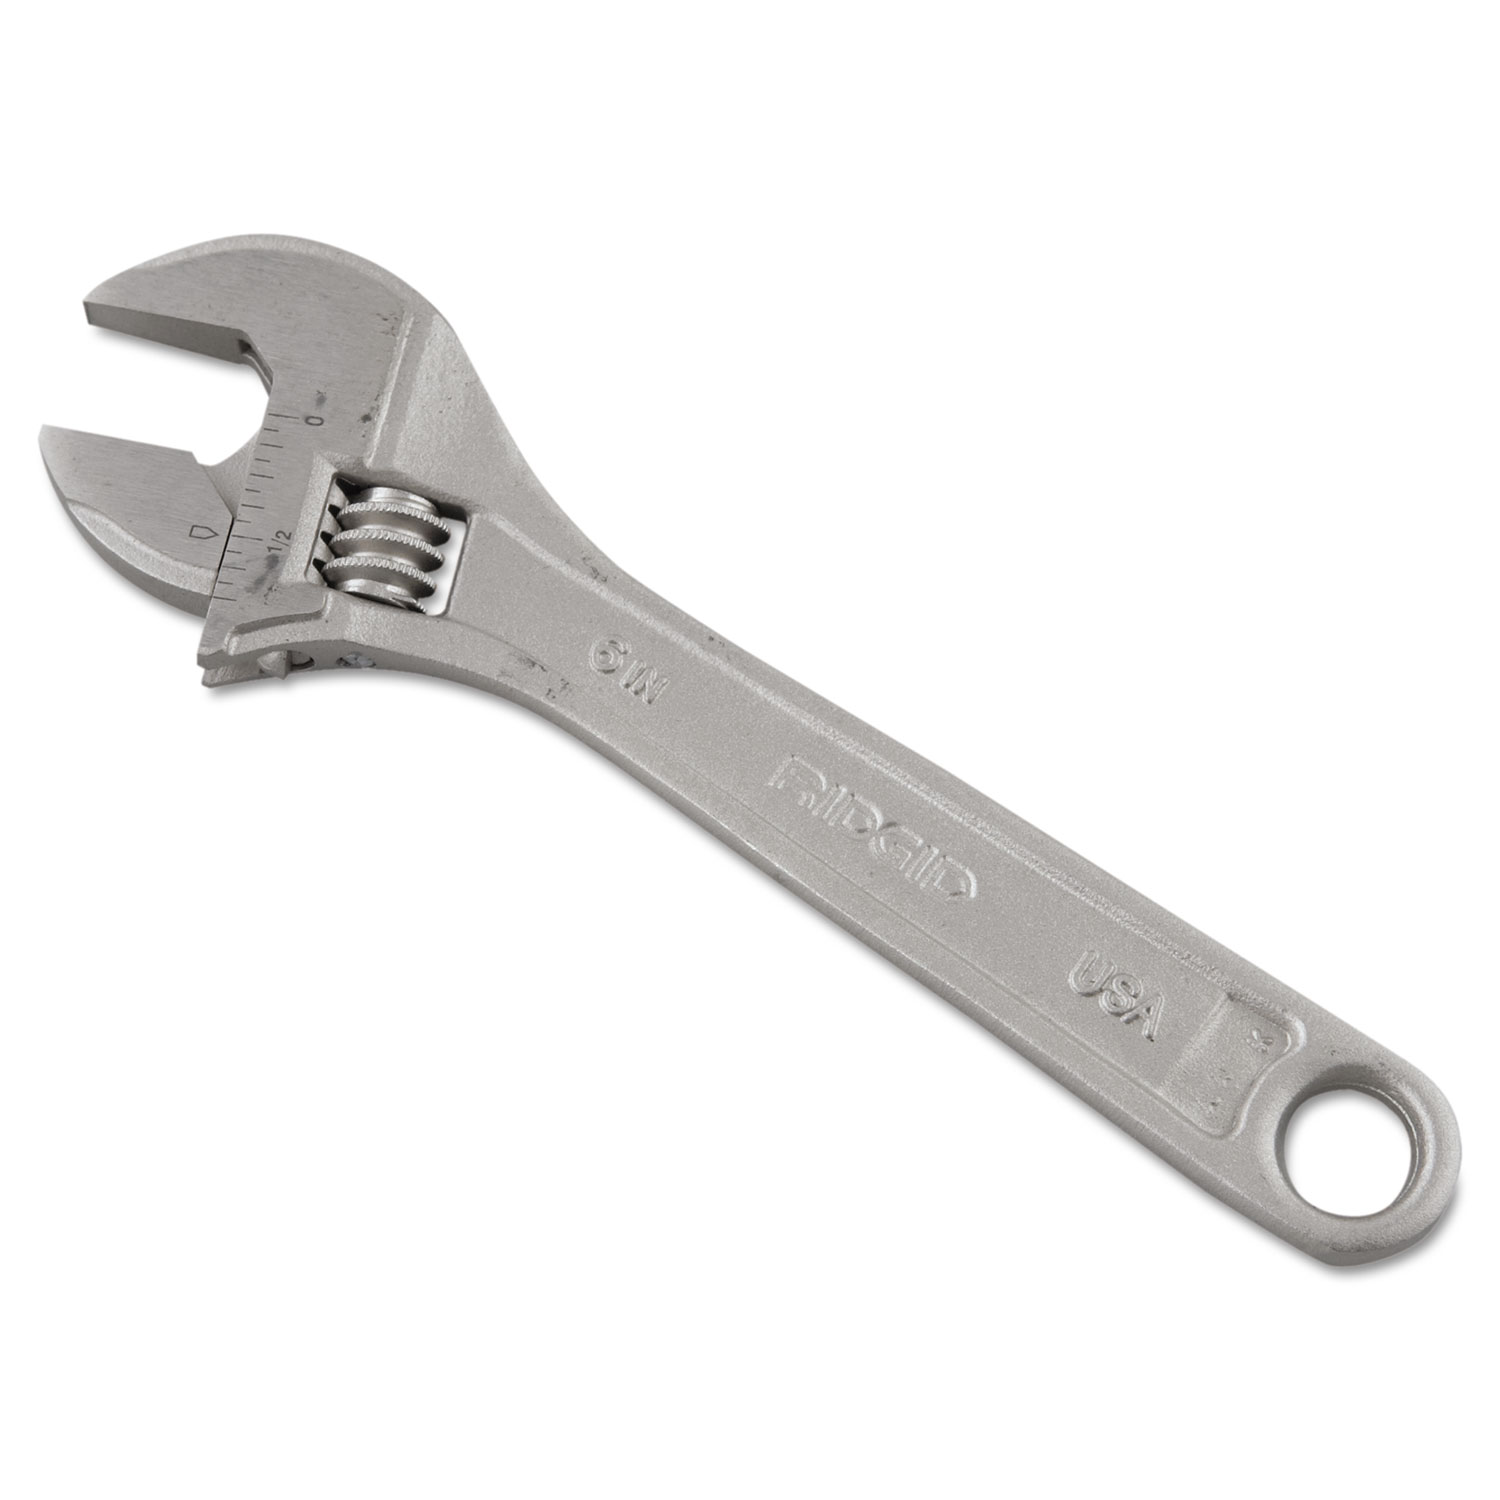 RIDGID Adjustable Wrench, 6 Long, 3/4 Jaw Capacity, Chrome Finish